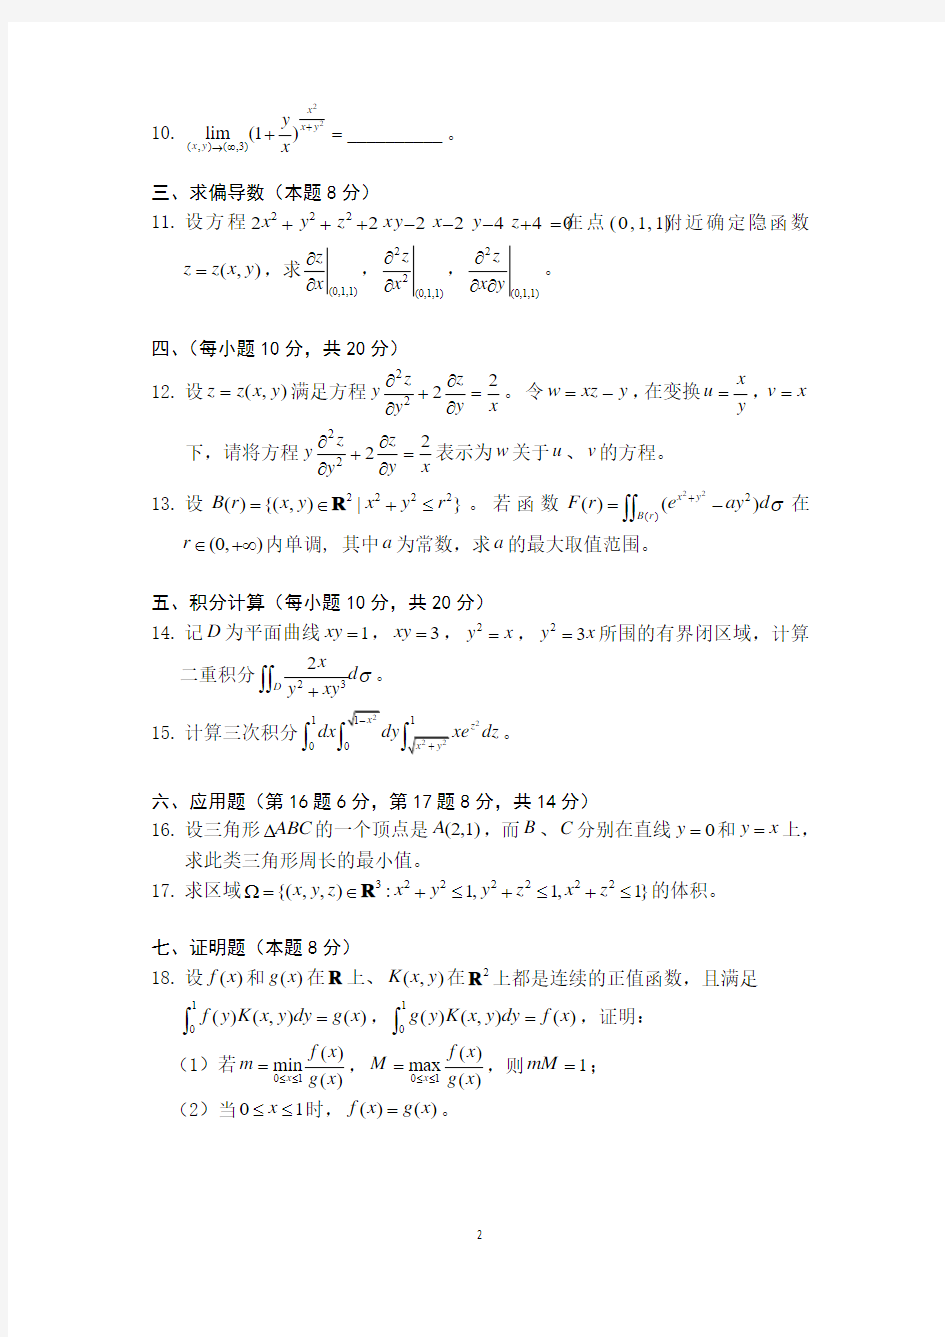 上海交通大学高等数学A下册期中试题汇编